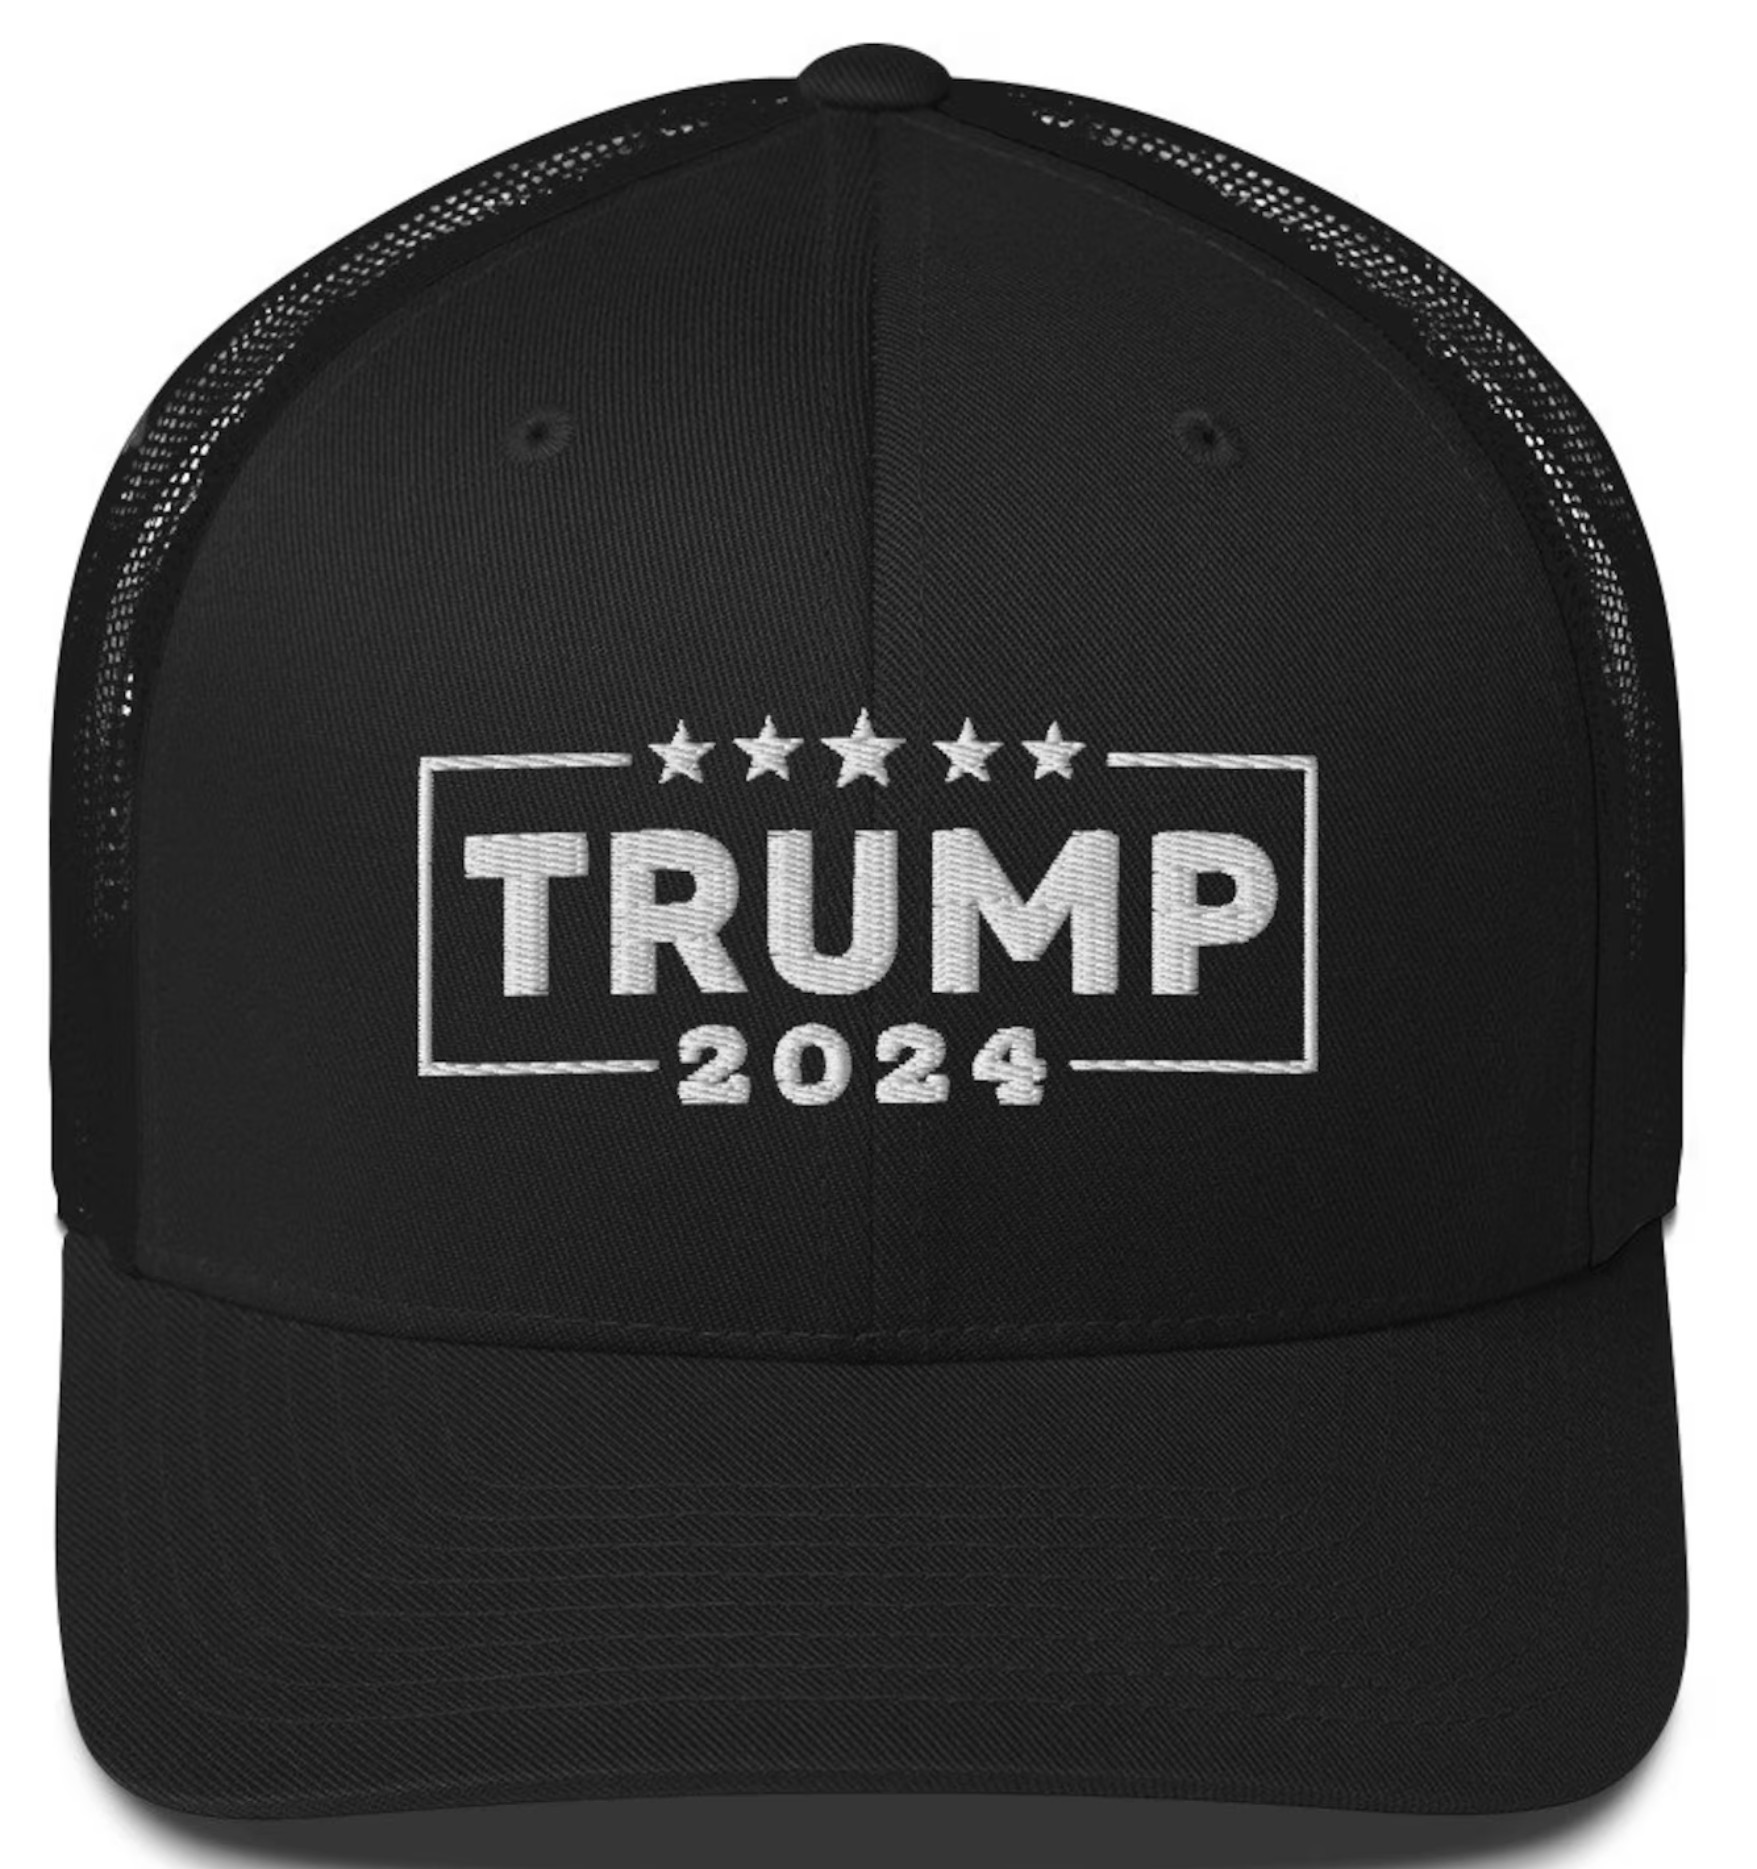 Trump 2024 Hat, Trump 2024 Trucker Caps